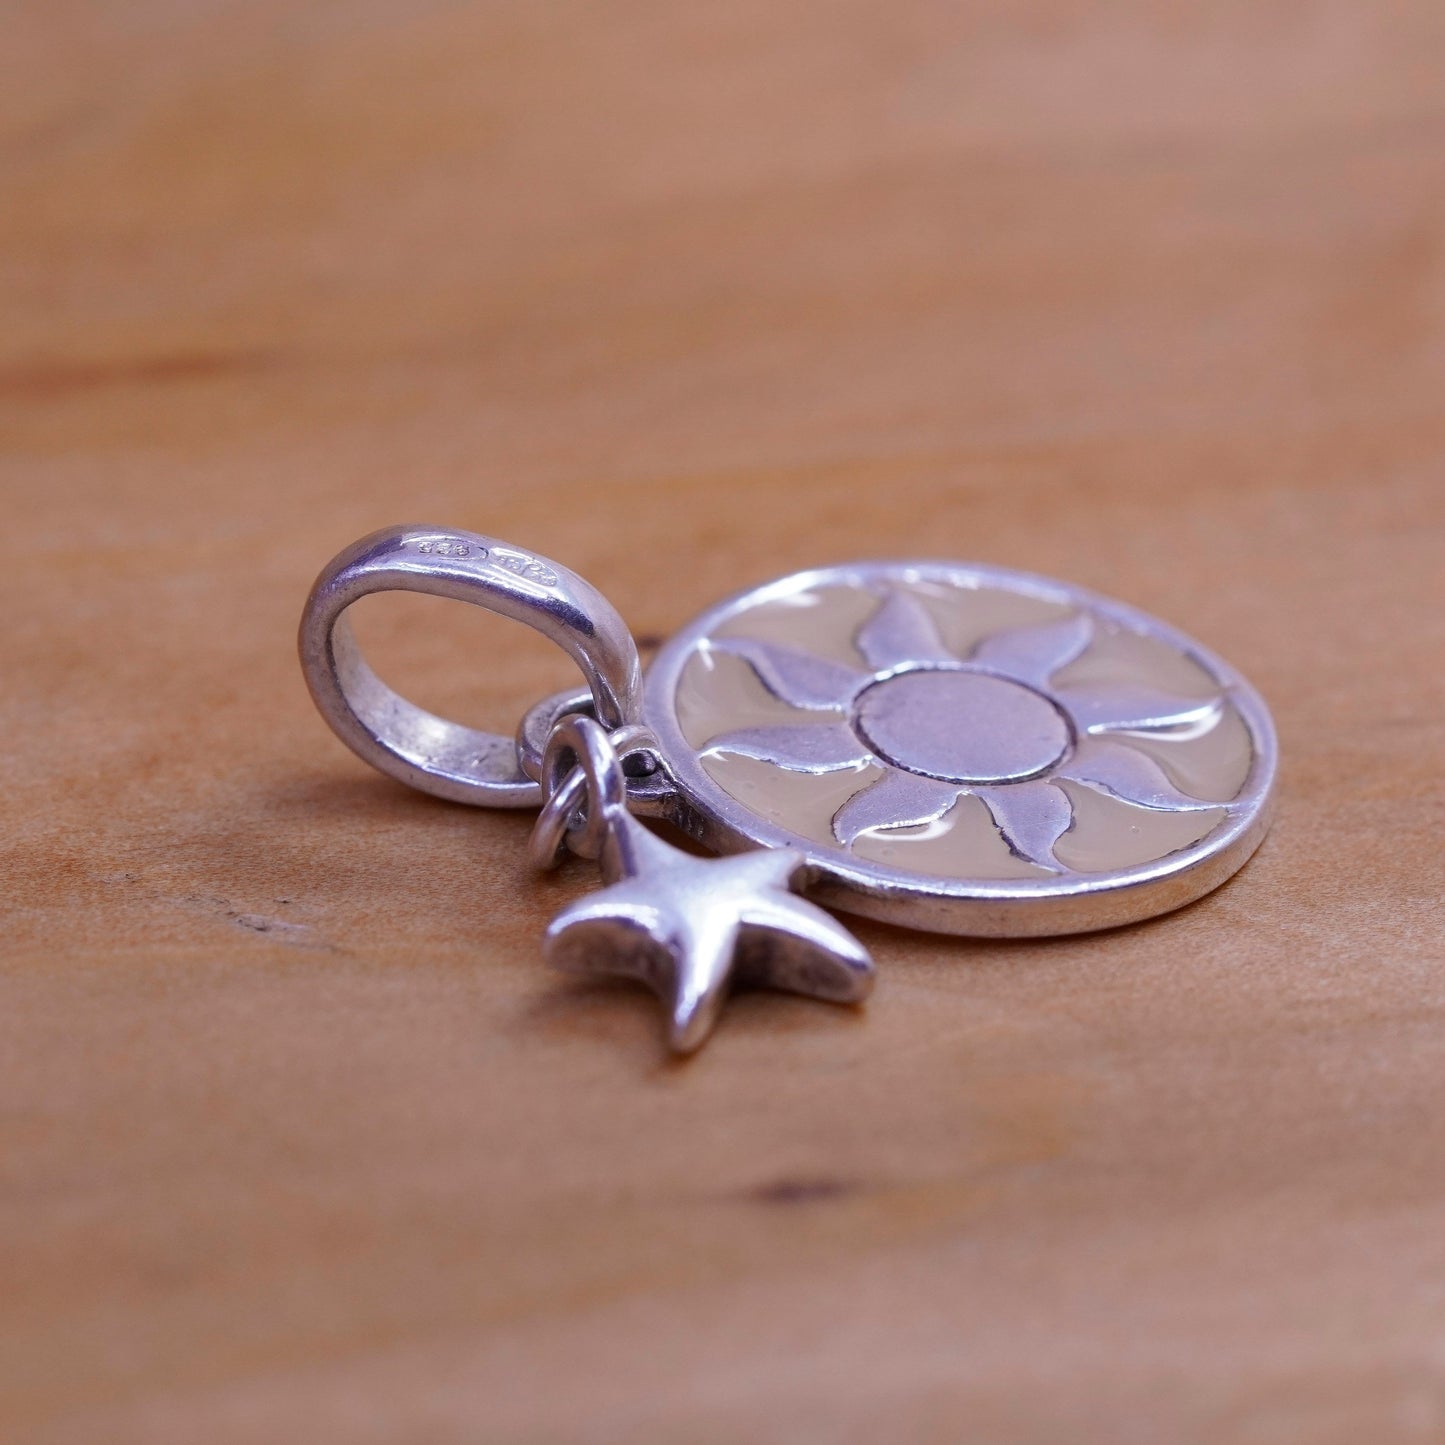 vtg Sterling silver handmade flower pendant, 925 Tag charm enamel flower star